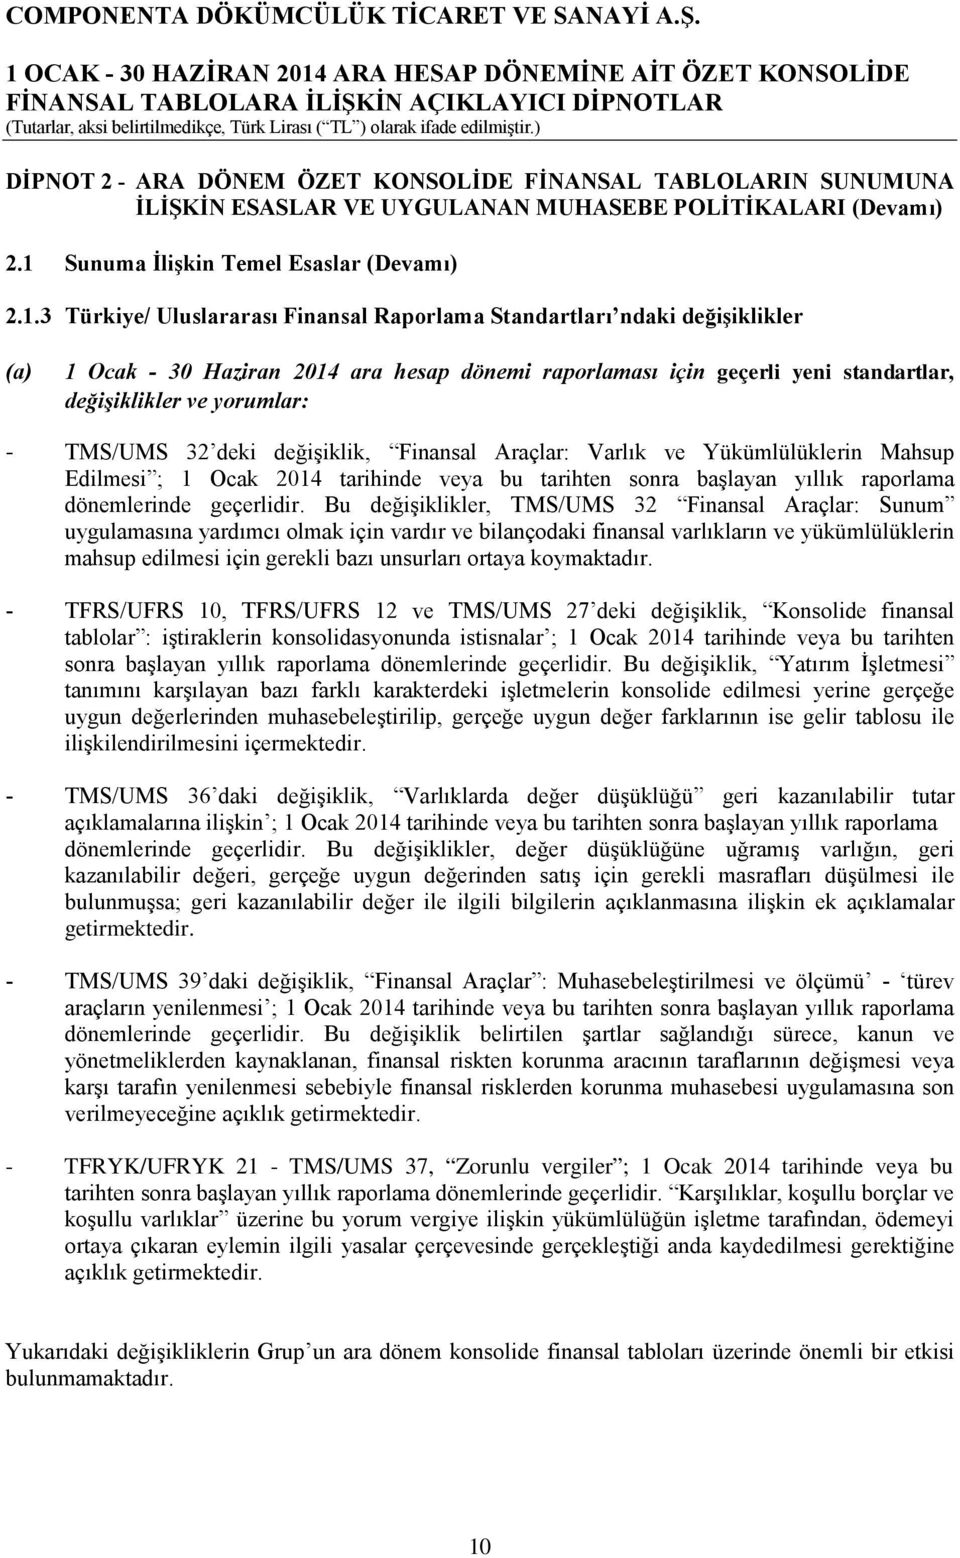 3 Türkiye/ Uluslararası Finansal Raporlama Standartları ndaki değişiklikler (a) 1 Ocak - 30 Haziran 2014 ara hesap dönemi raporlaması için geçerli yeni standartlar, değişiklikler ve yorumlar: -